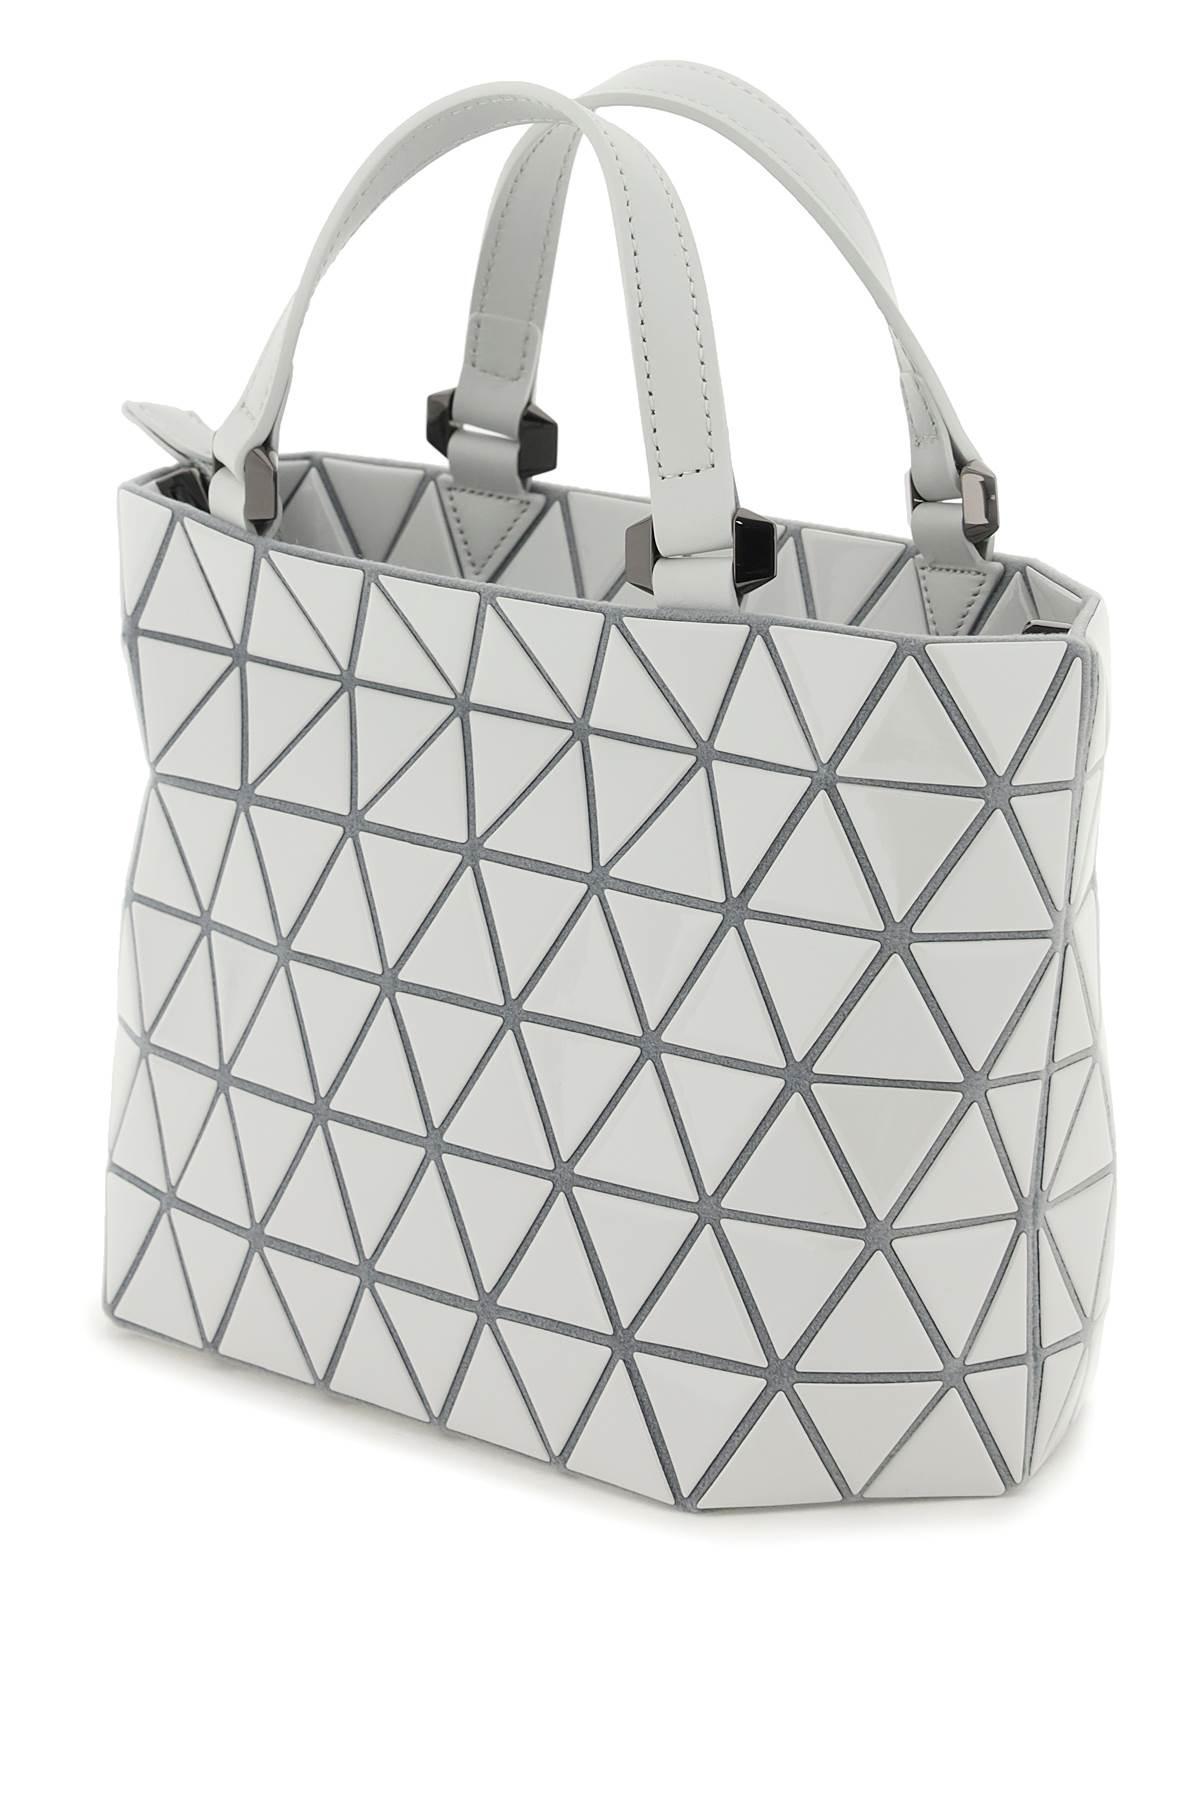 Bao Bao Issey Miyake 'crystal Gloss' Handbag in Gray | Lyst